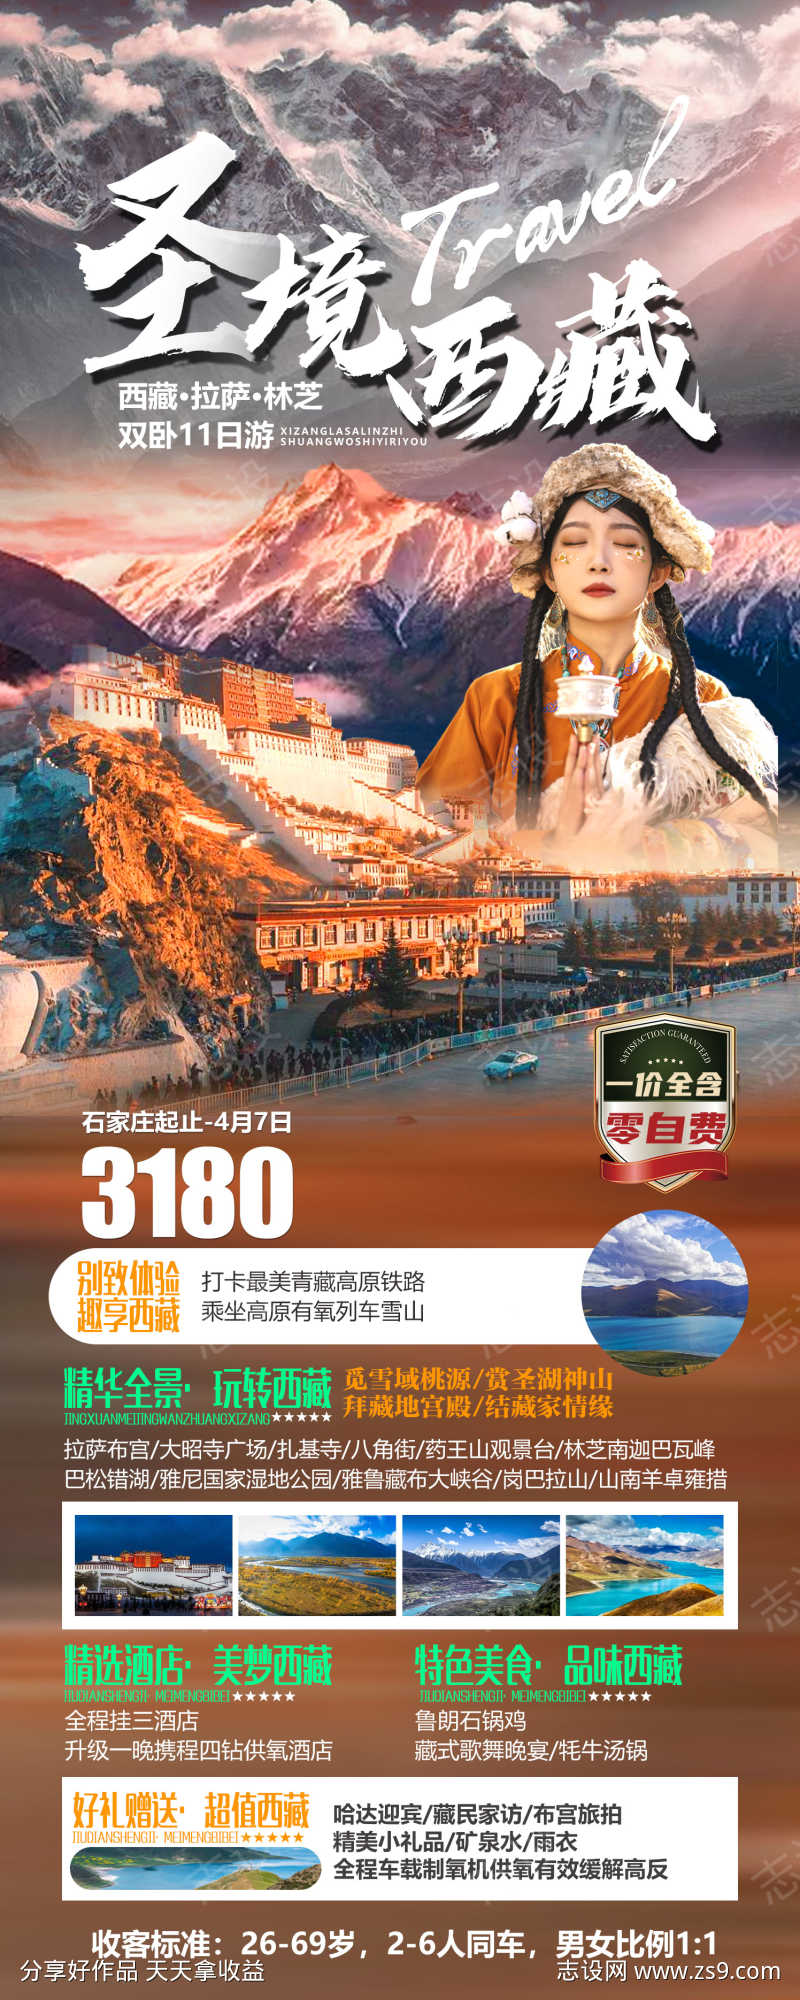 圣境西藏海报